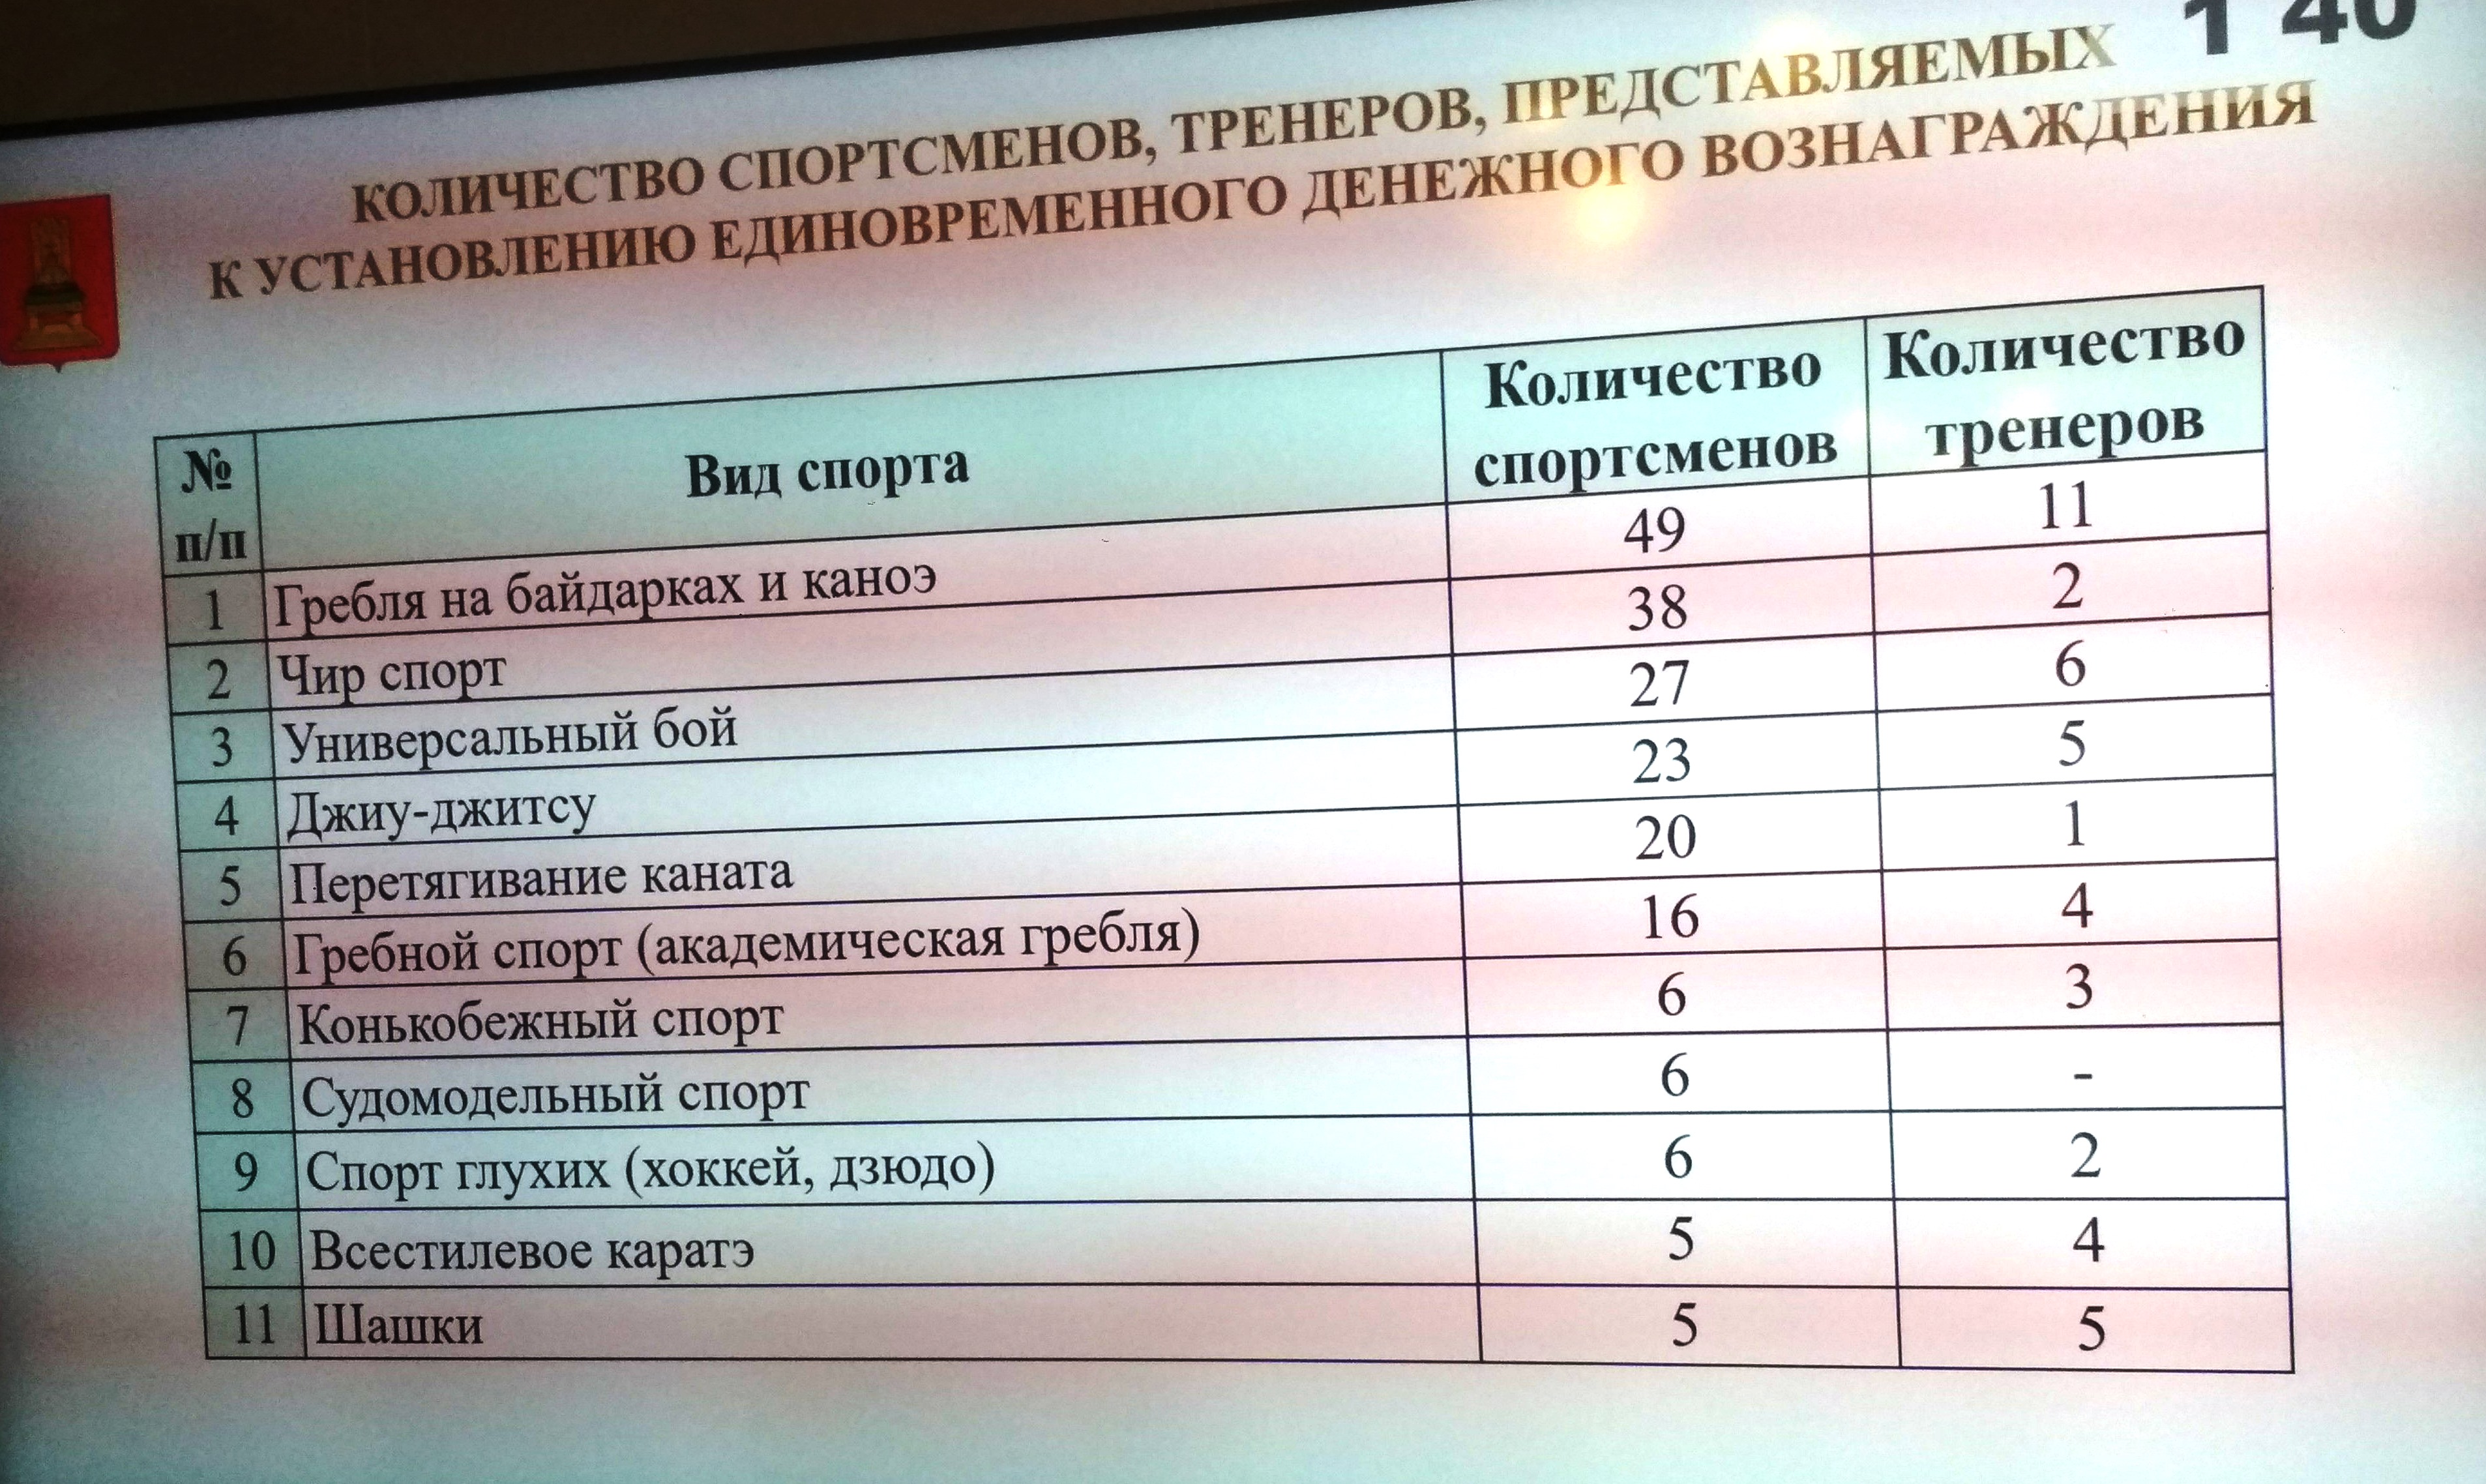 Тверские спортсмены и тренеры за высокие достижения получат 2,6 млн рублей